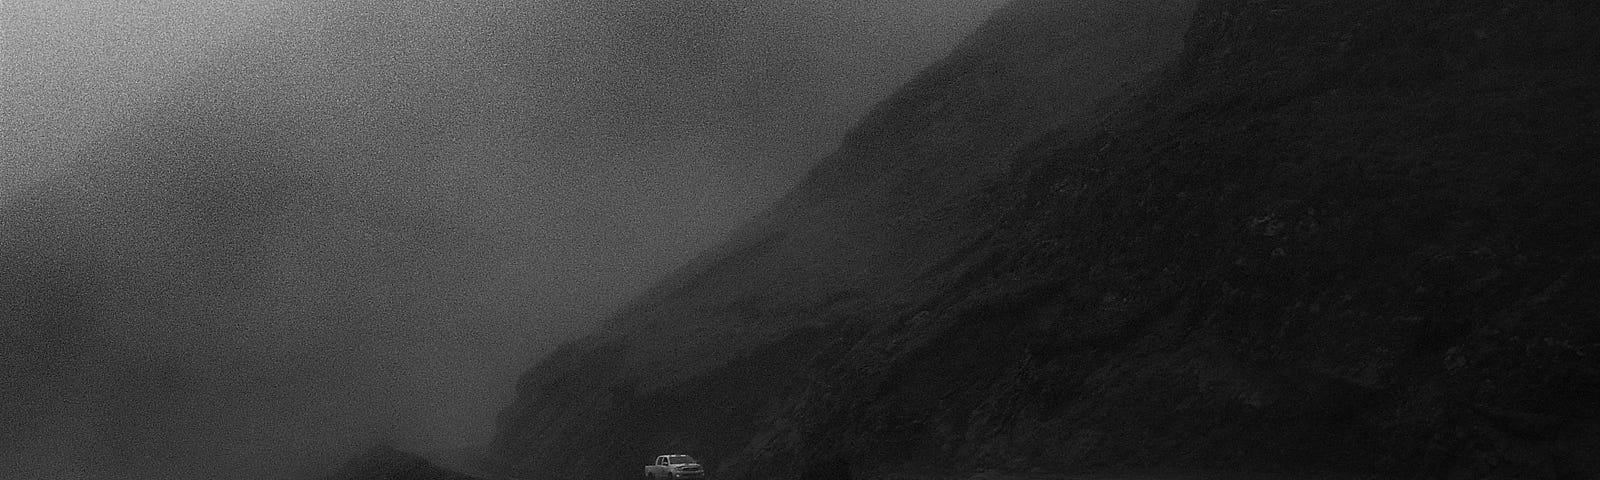 A car on a dark mountain road.